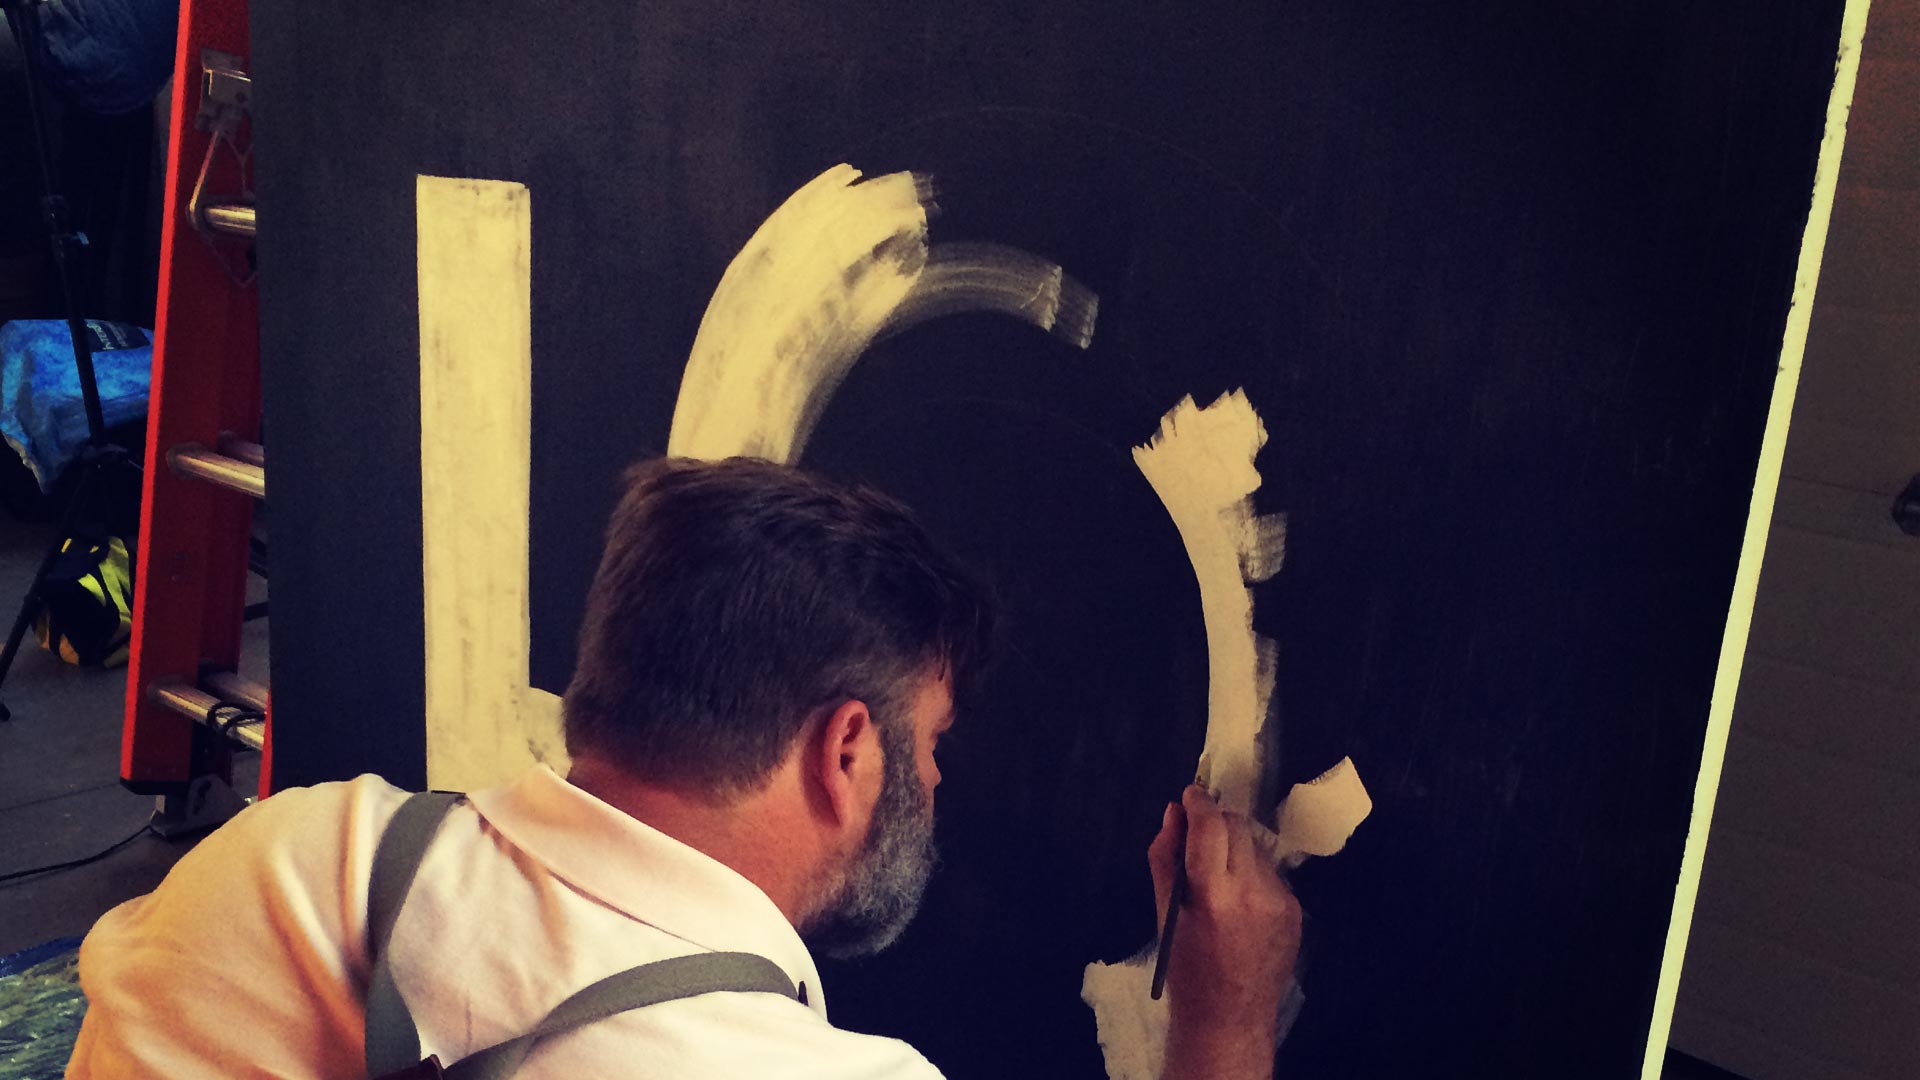 James Dixson paints a giant 5 on a canvas